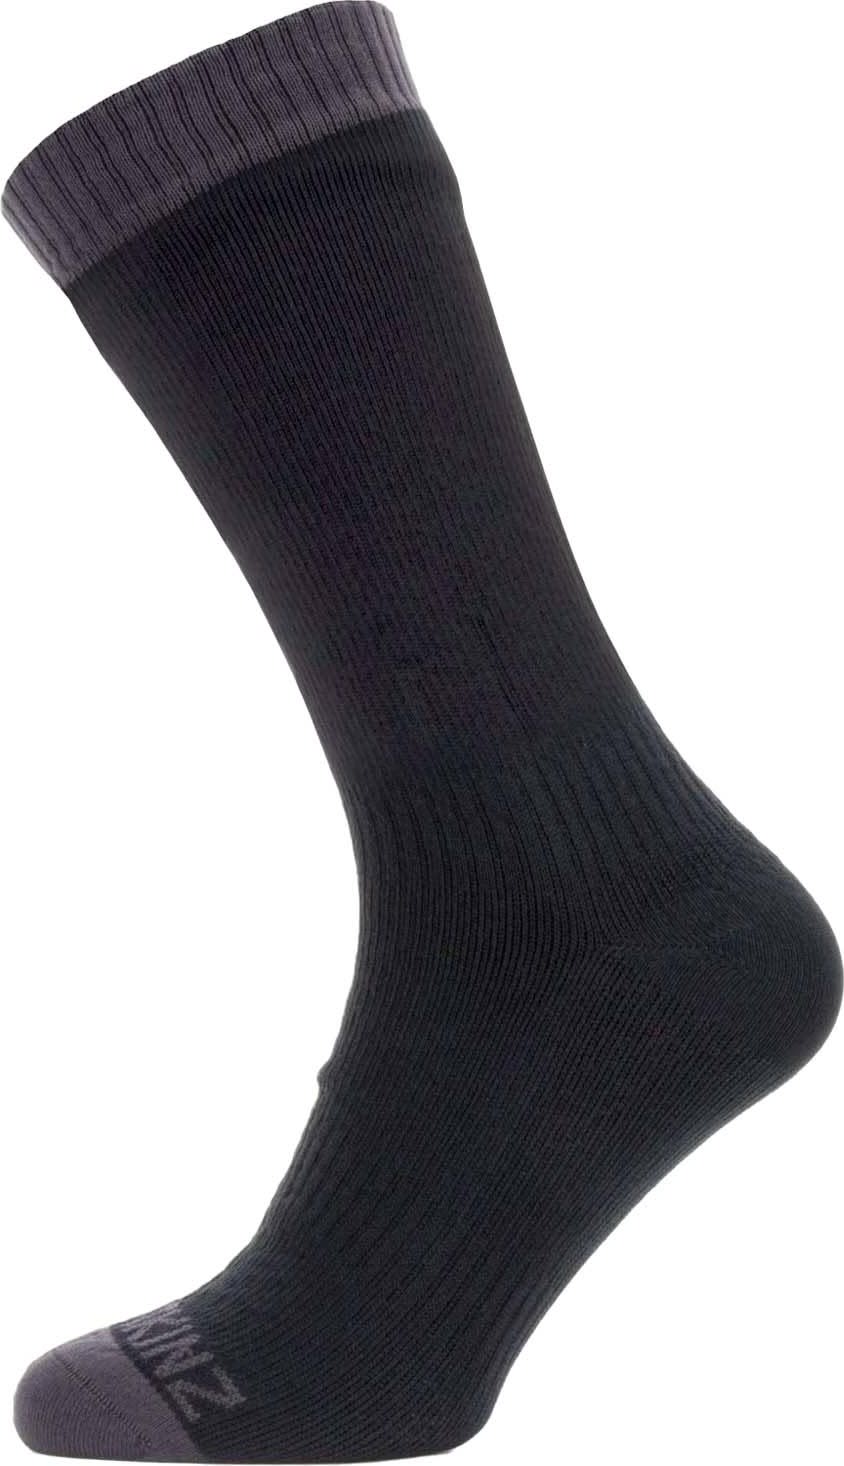 Waterproof Warm Weather Mid Length Sock Black/Dark Grey